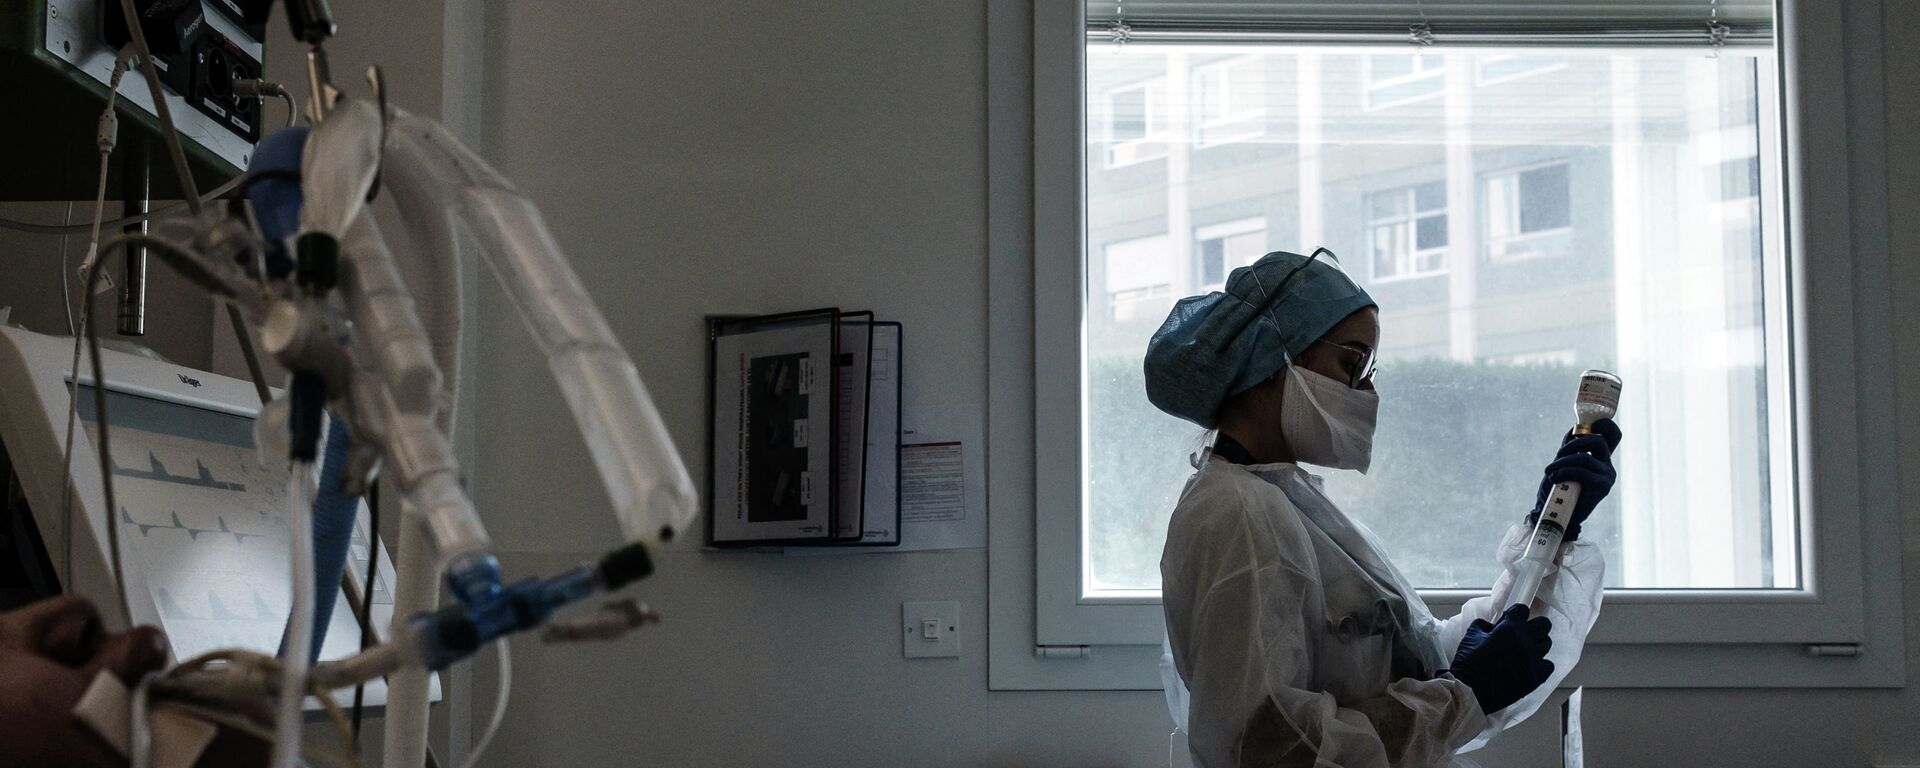 Медсестра в защитном костюме готовит лекарства для капельницы пациенту в палате реанимации больницы с коронавирусом  - Sputnik Қазақстан, 1920, 24.11.2021